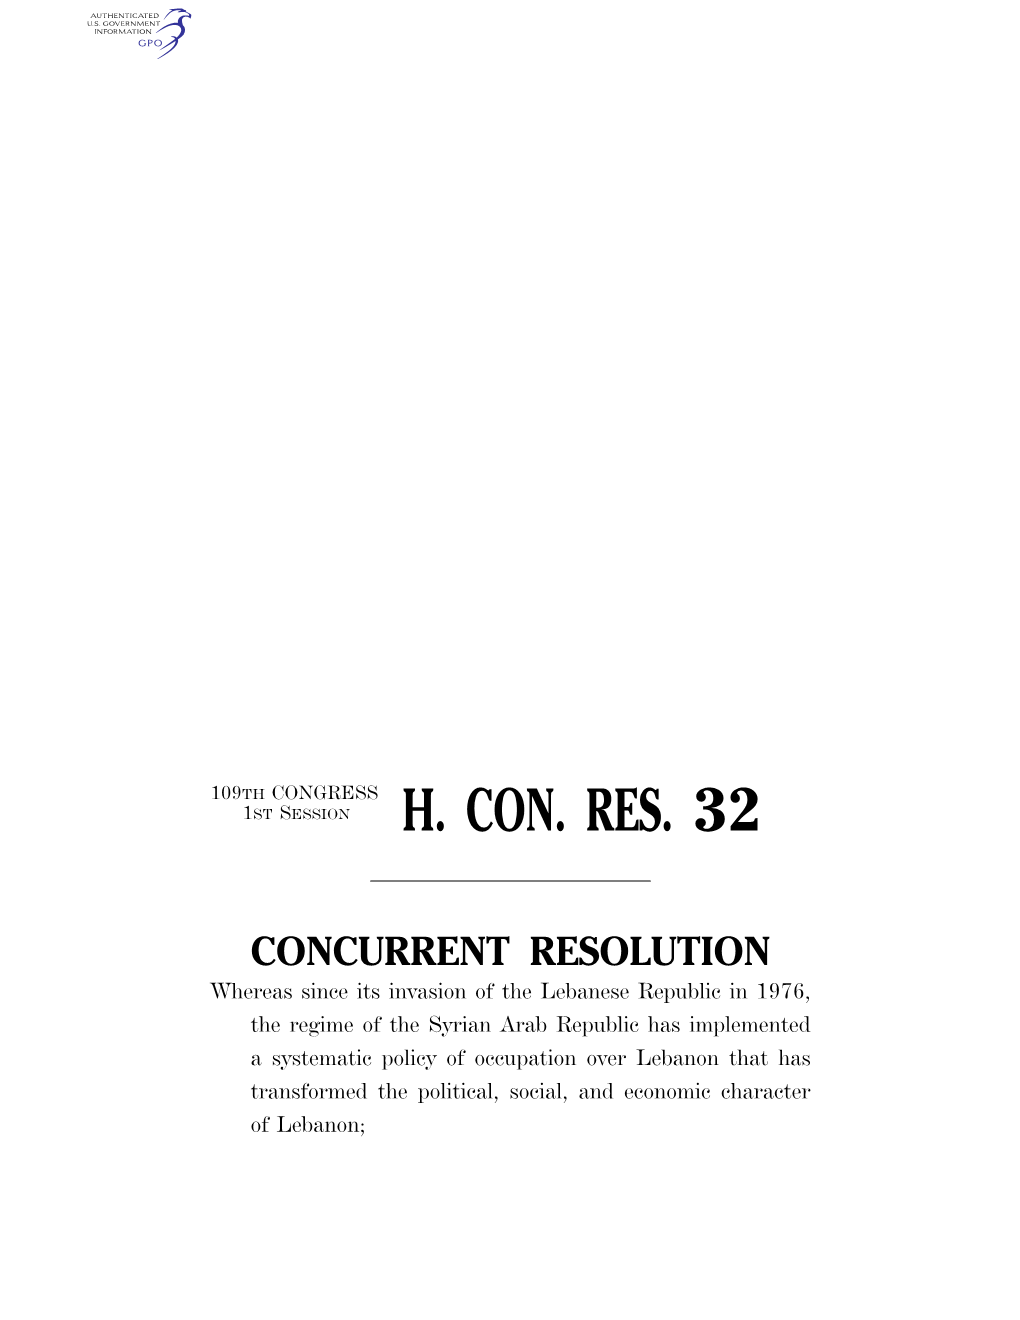 H. Con. Res. 32